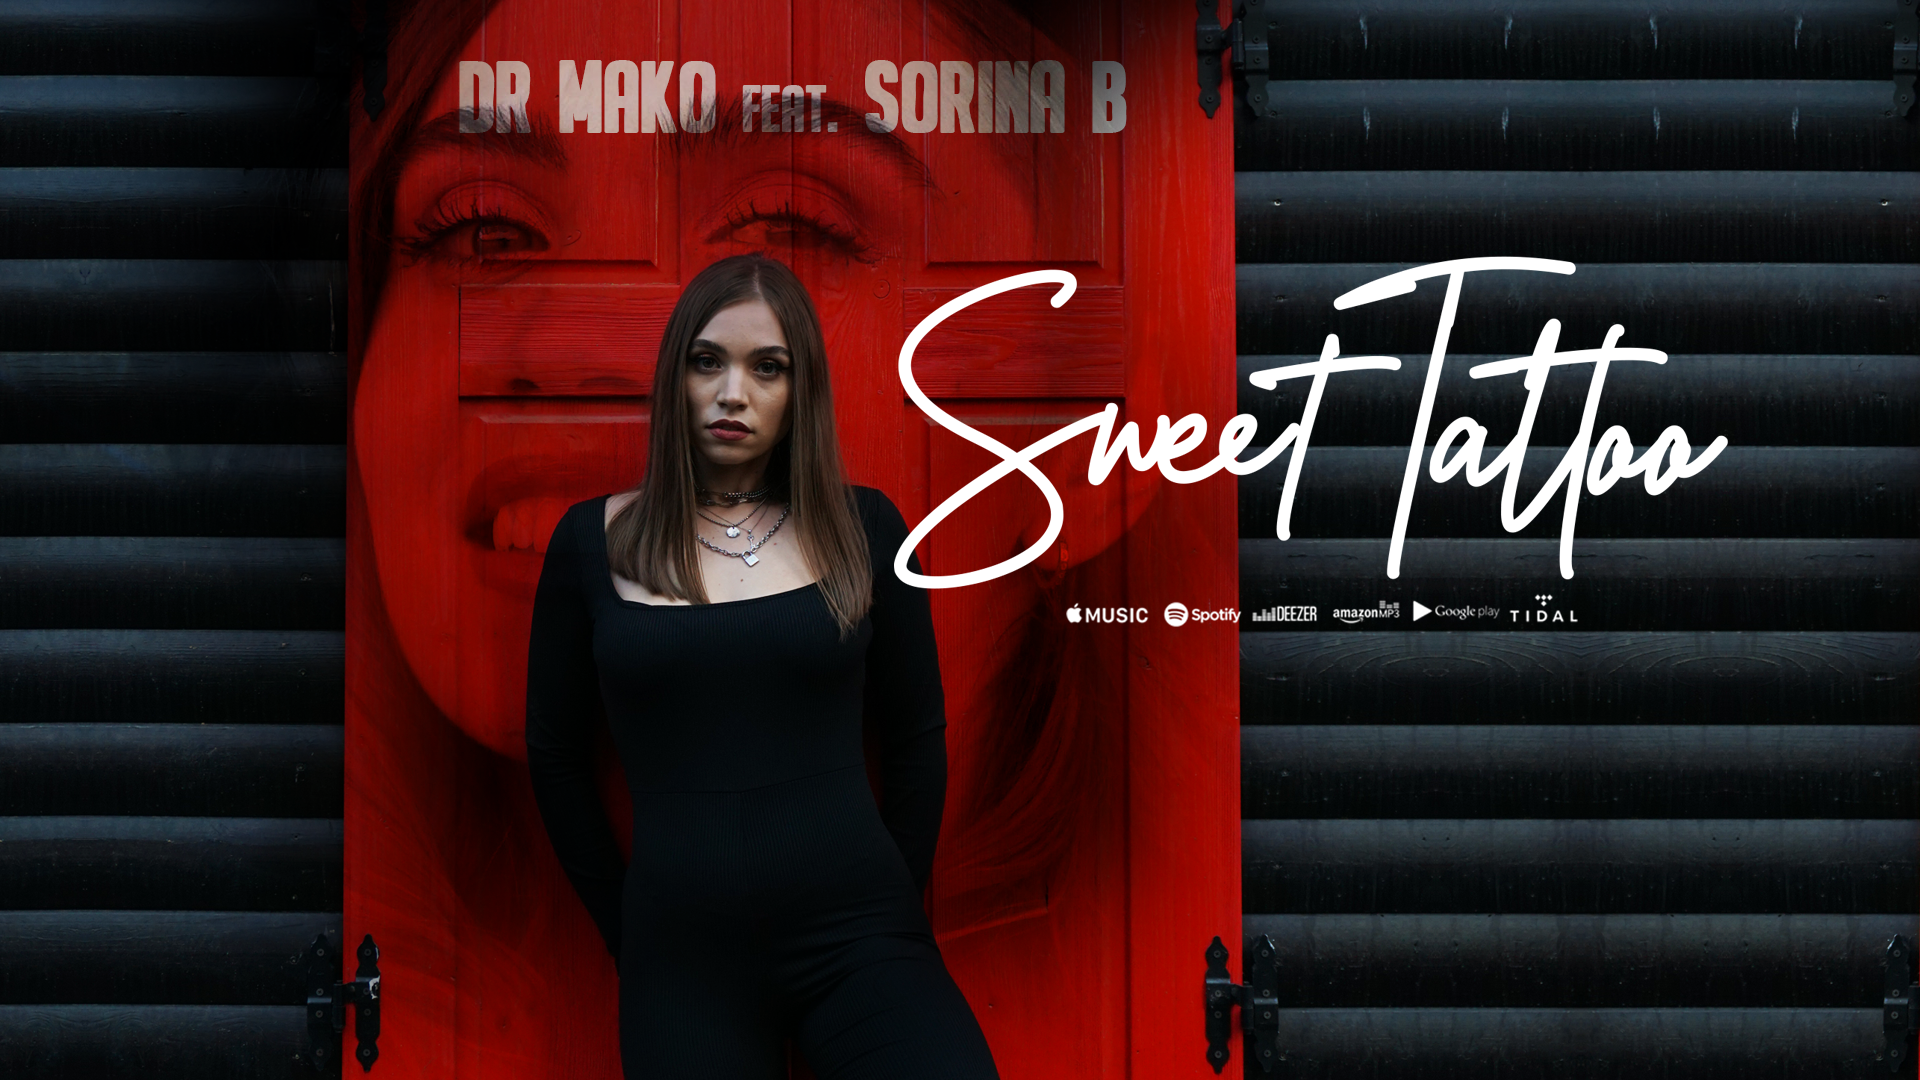 Dr. Mako și Sorina B., fosta concurentă de la Vocea României, colaborează pentru piesa „Sweet Tattoo”